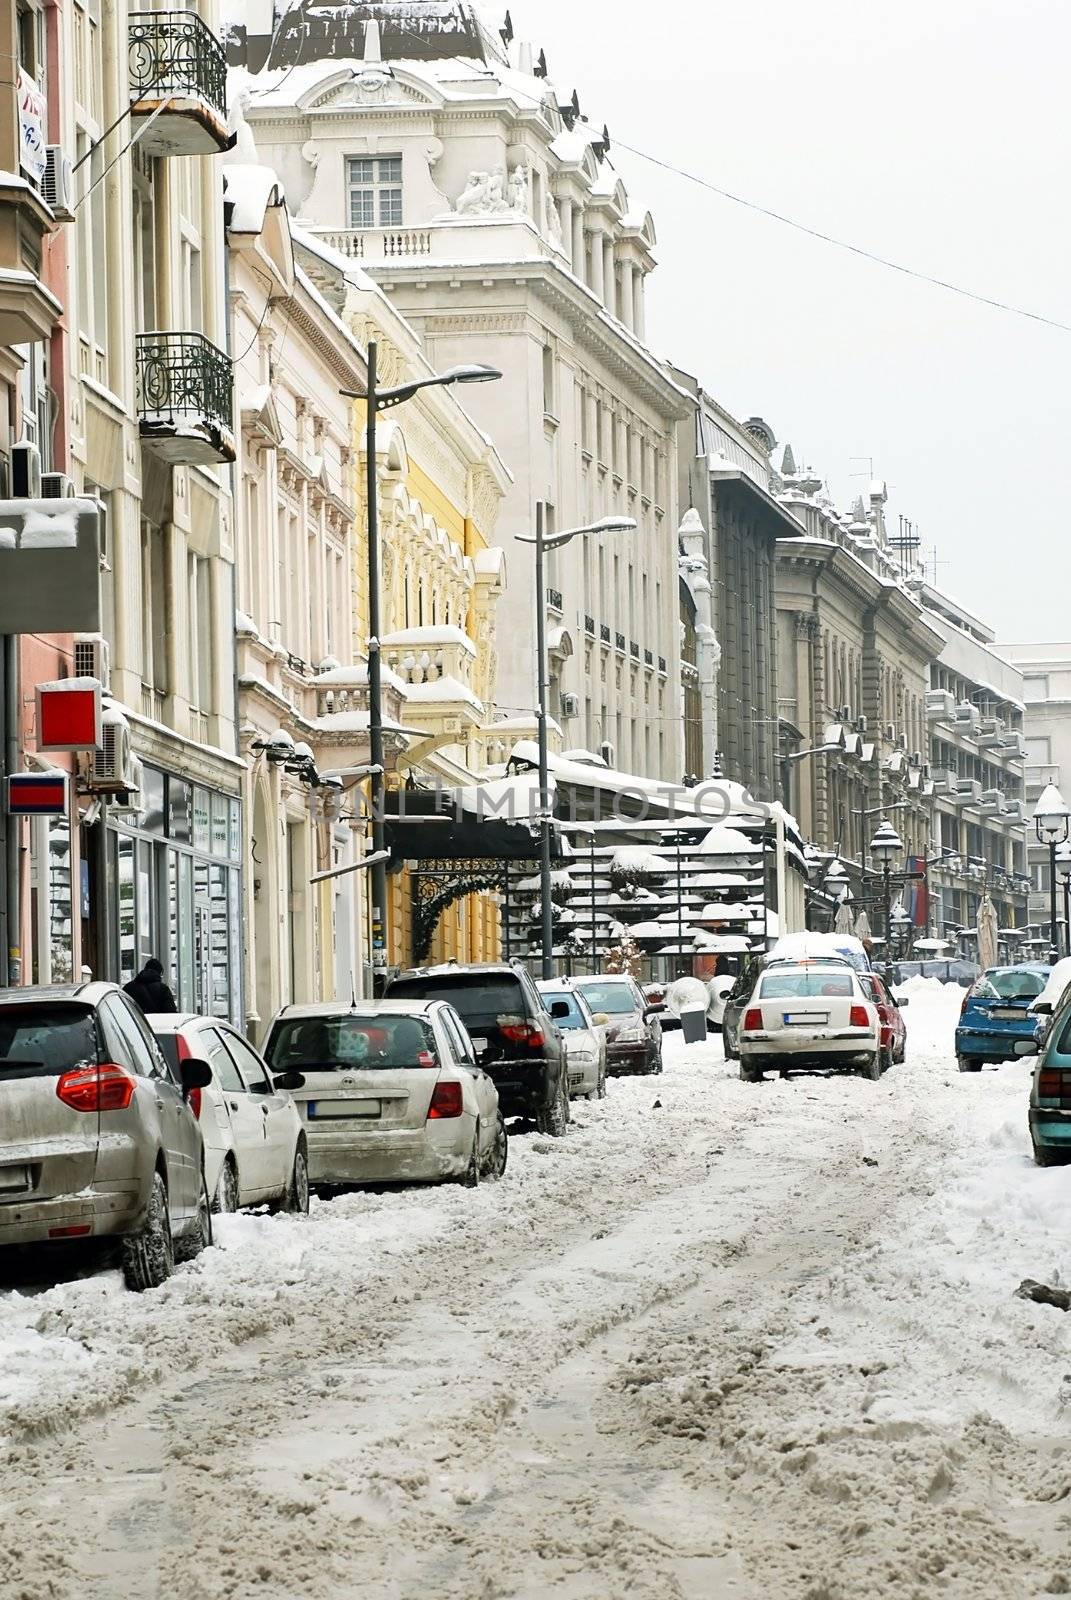 Winter Belgrade street by simply